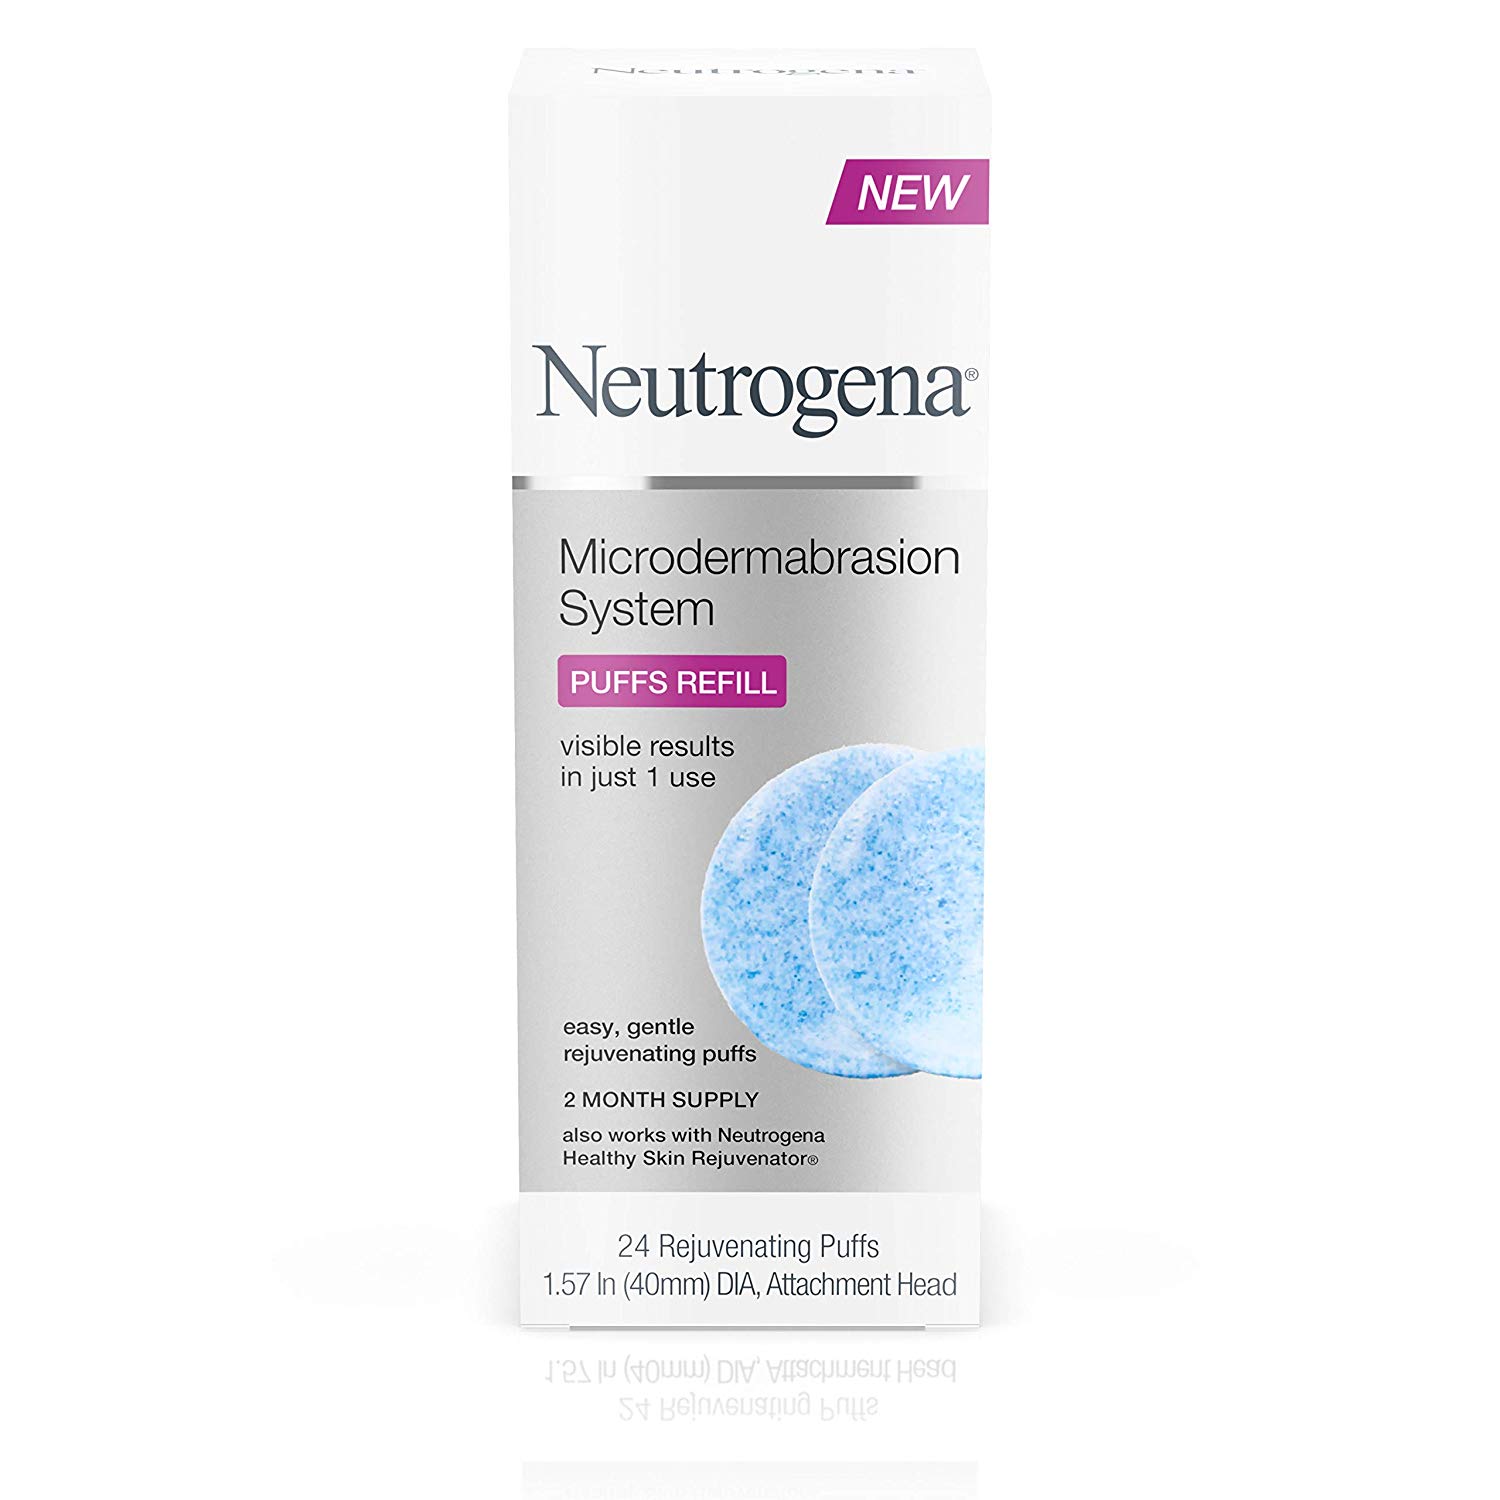 Neutrogena Microdermabrasion System Face Scrub Reviews